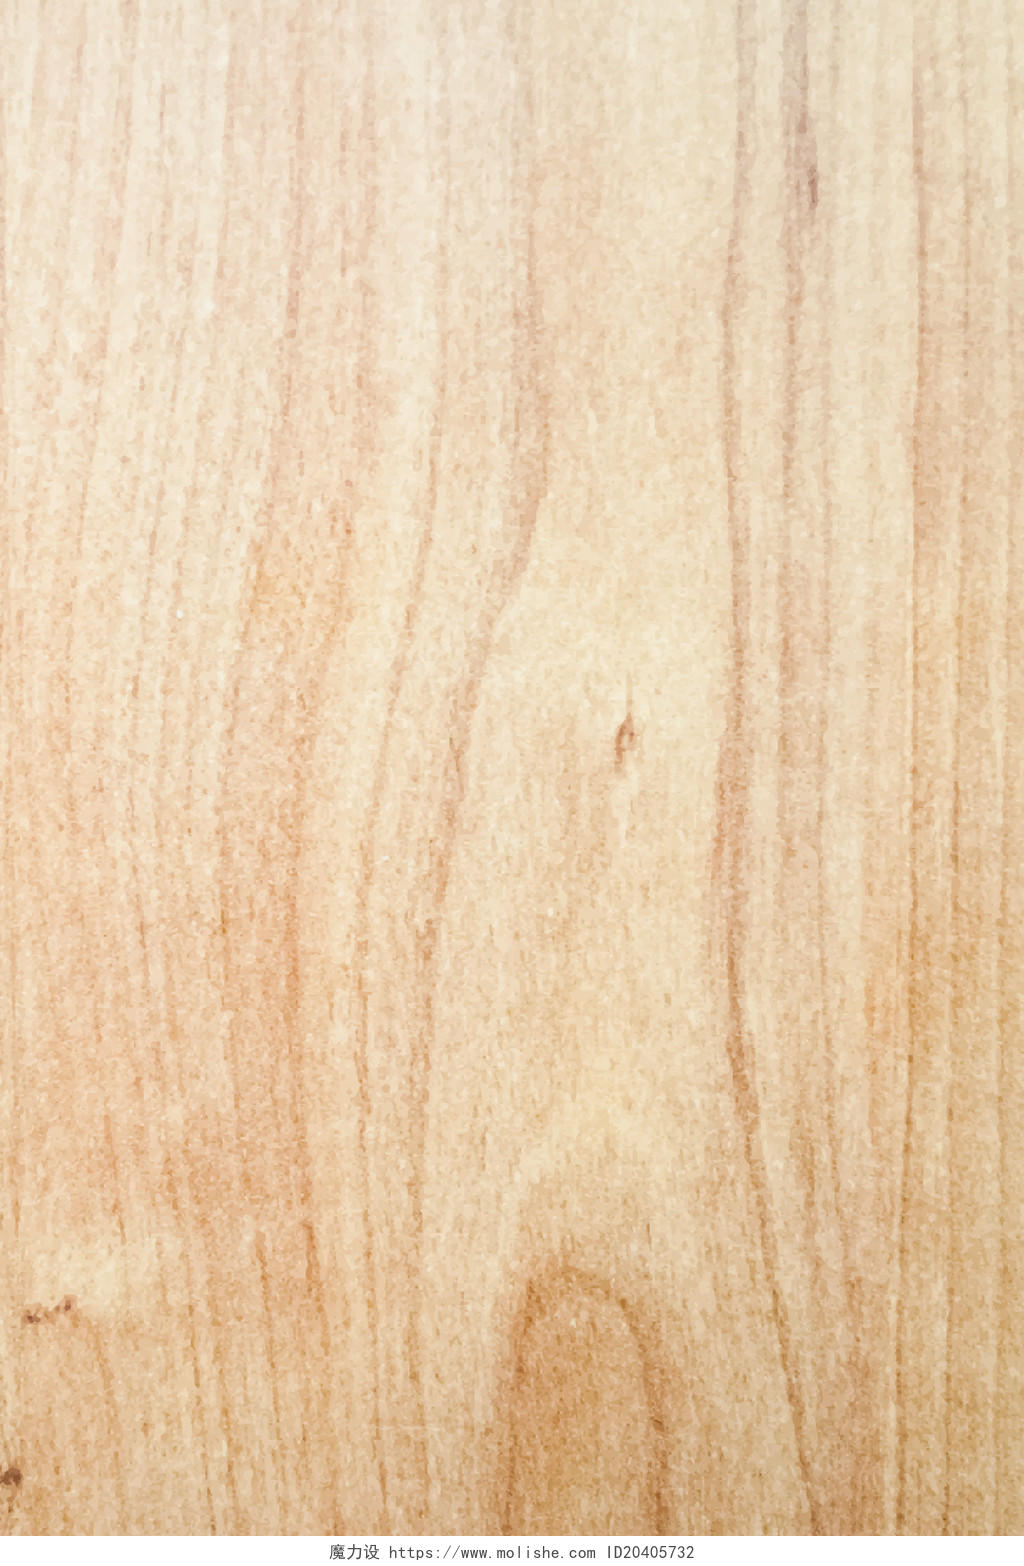 木纹木板浅色棕色木纹纹理肌理底纹质感材质木板地板背景